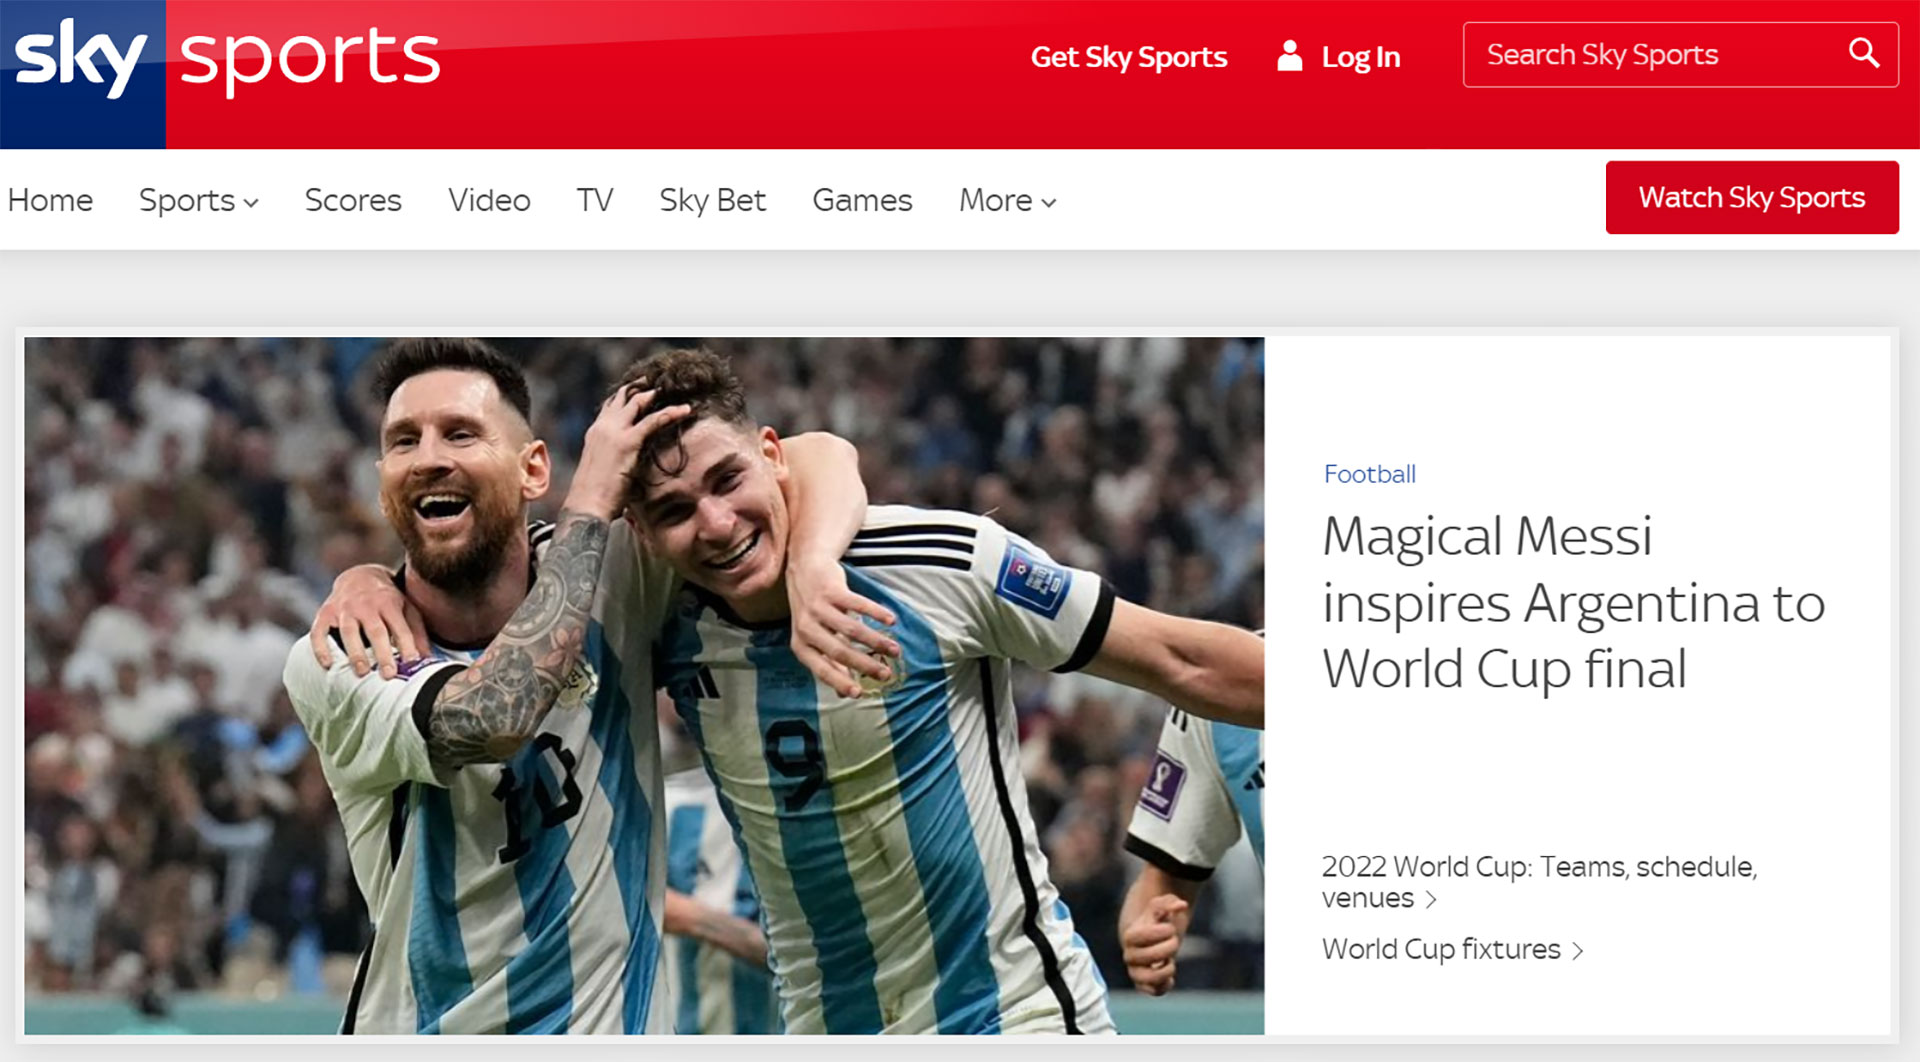 “El mágico Messi inspira a Argentina a la final del Mundial” (Sky Sports, Inglaterra)